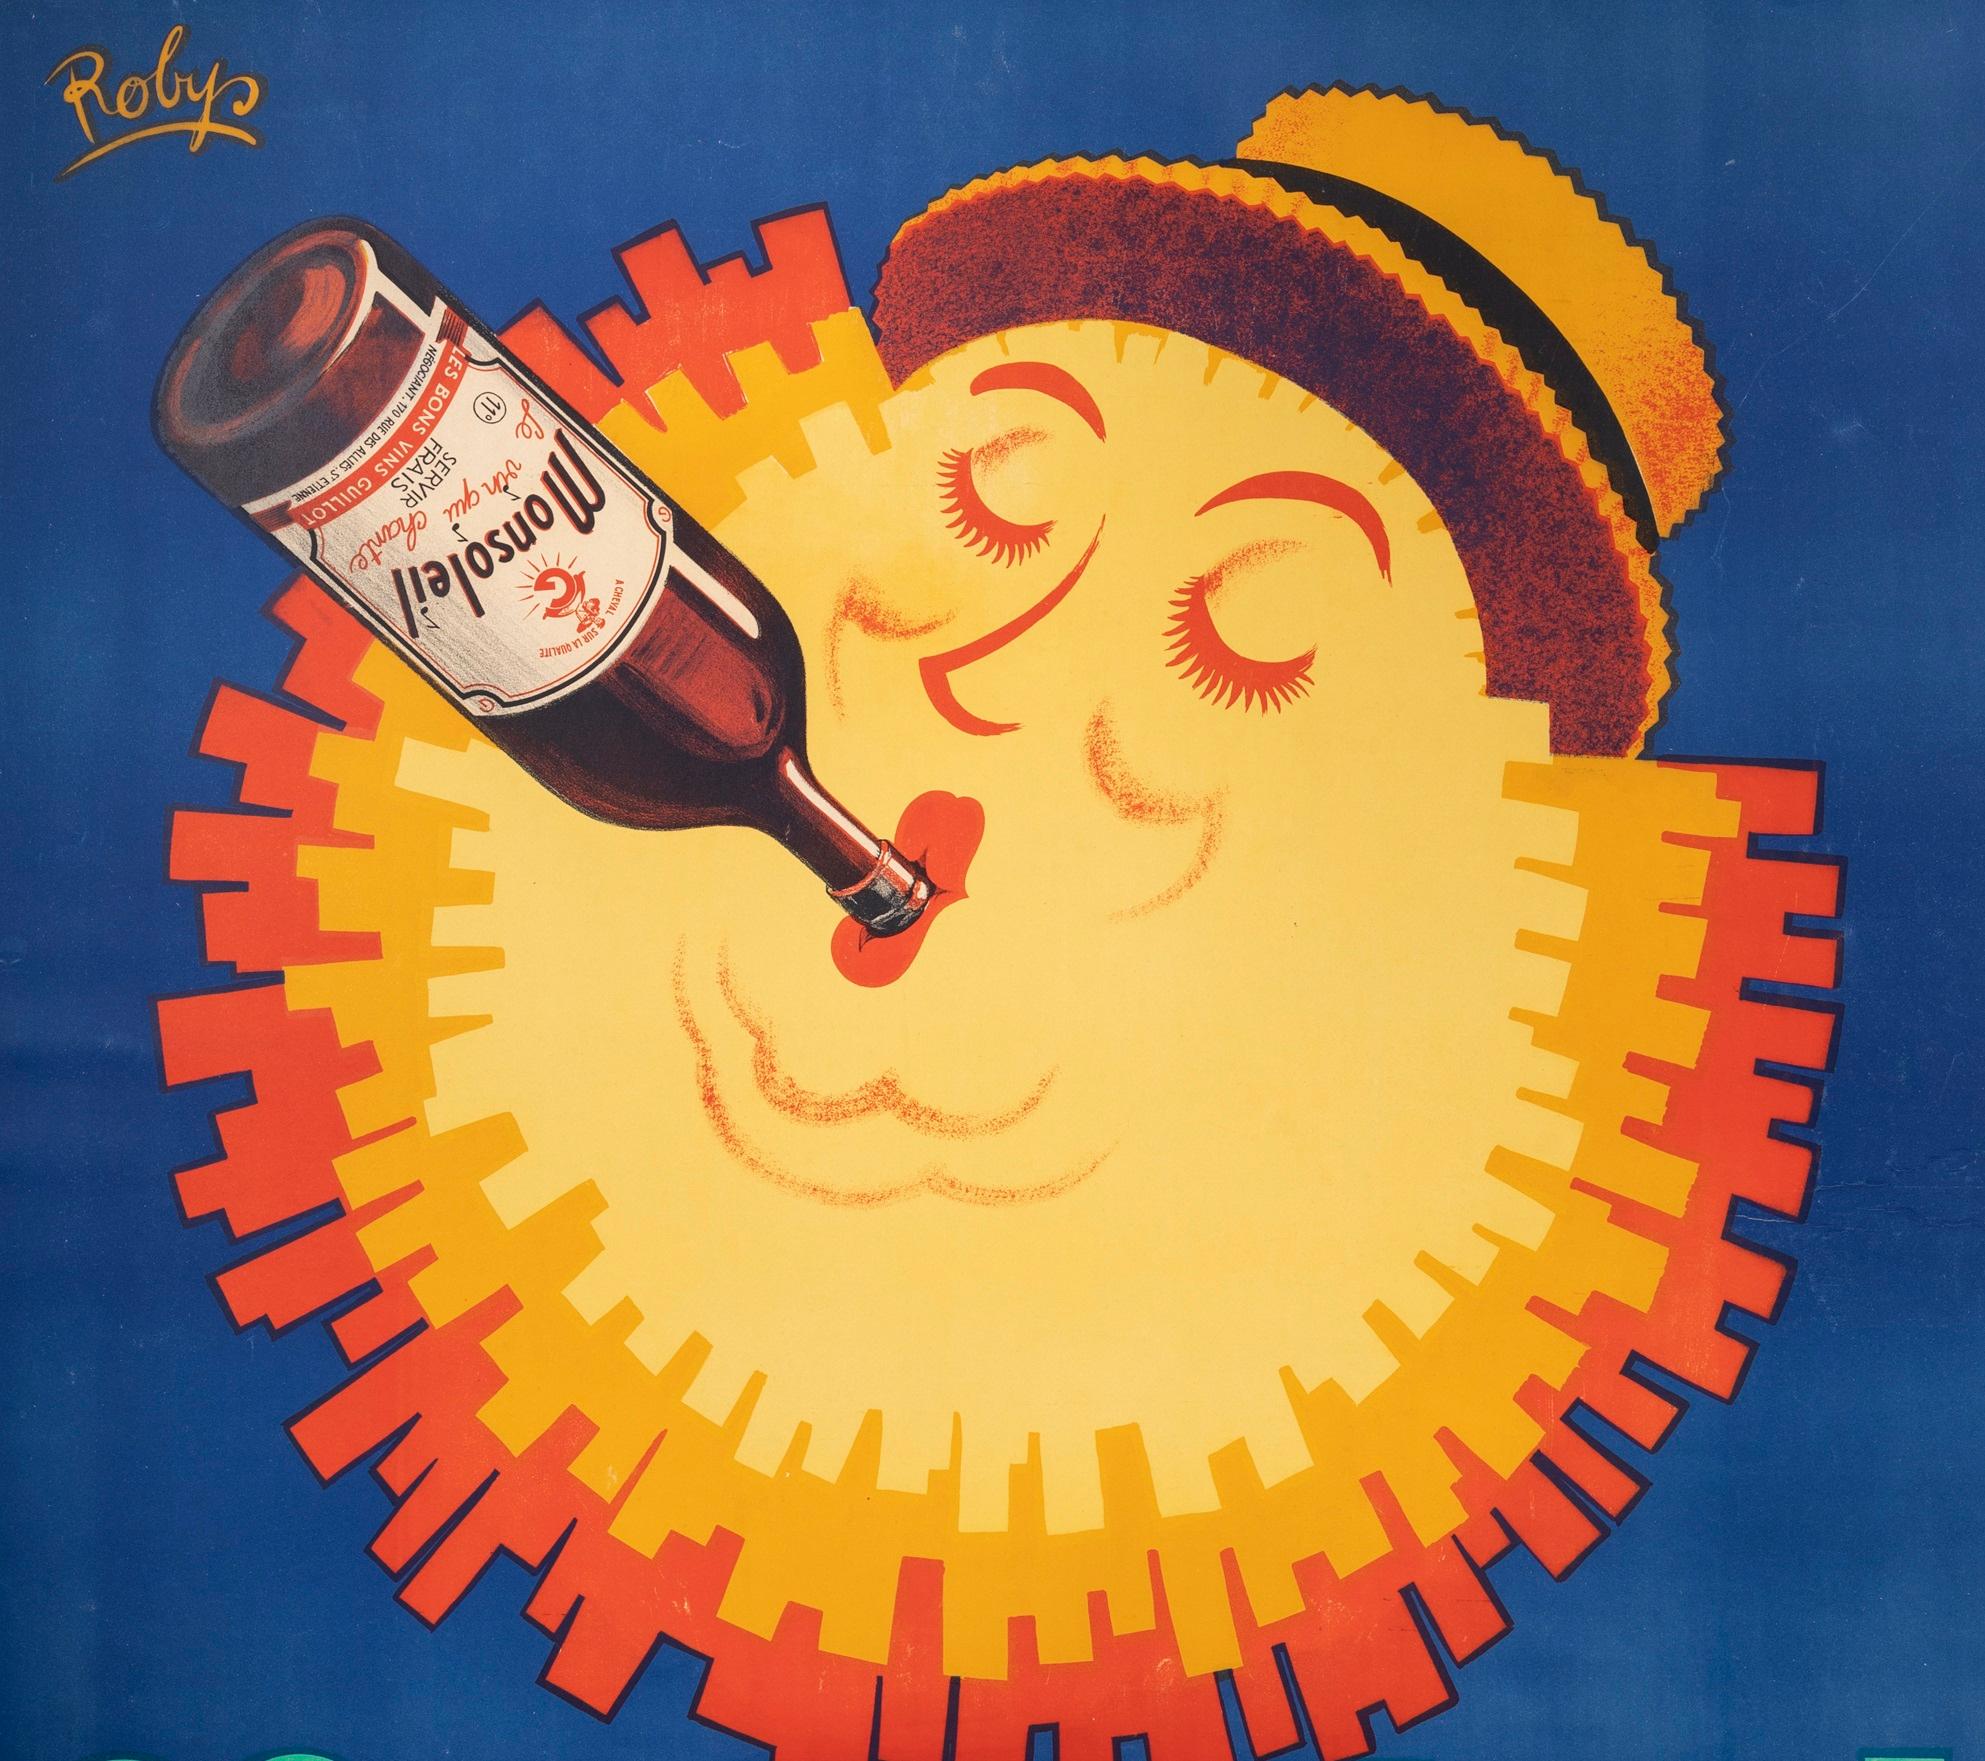 Affiche originale Vintage By pour Monsoleil, affiche de vin, créée par Robys en 1940.

Artistics : Robys (Robert Wolff 1916-1995)

Titre : Monsoleil - Les bons vins Guillot

Date : vers 1940

Taille (l x h) : 47.2 x 63 in / 120 x 160 cm

Imprimeur :